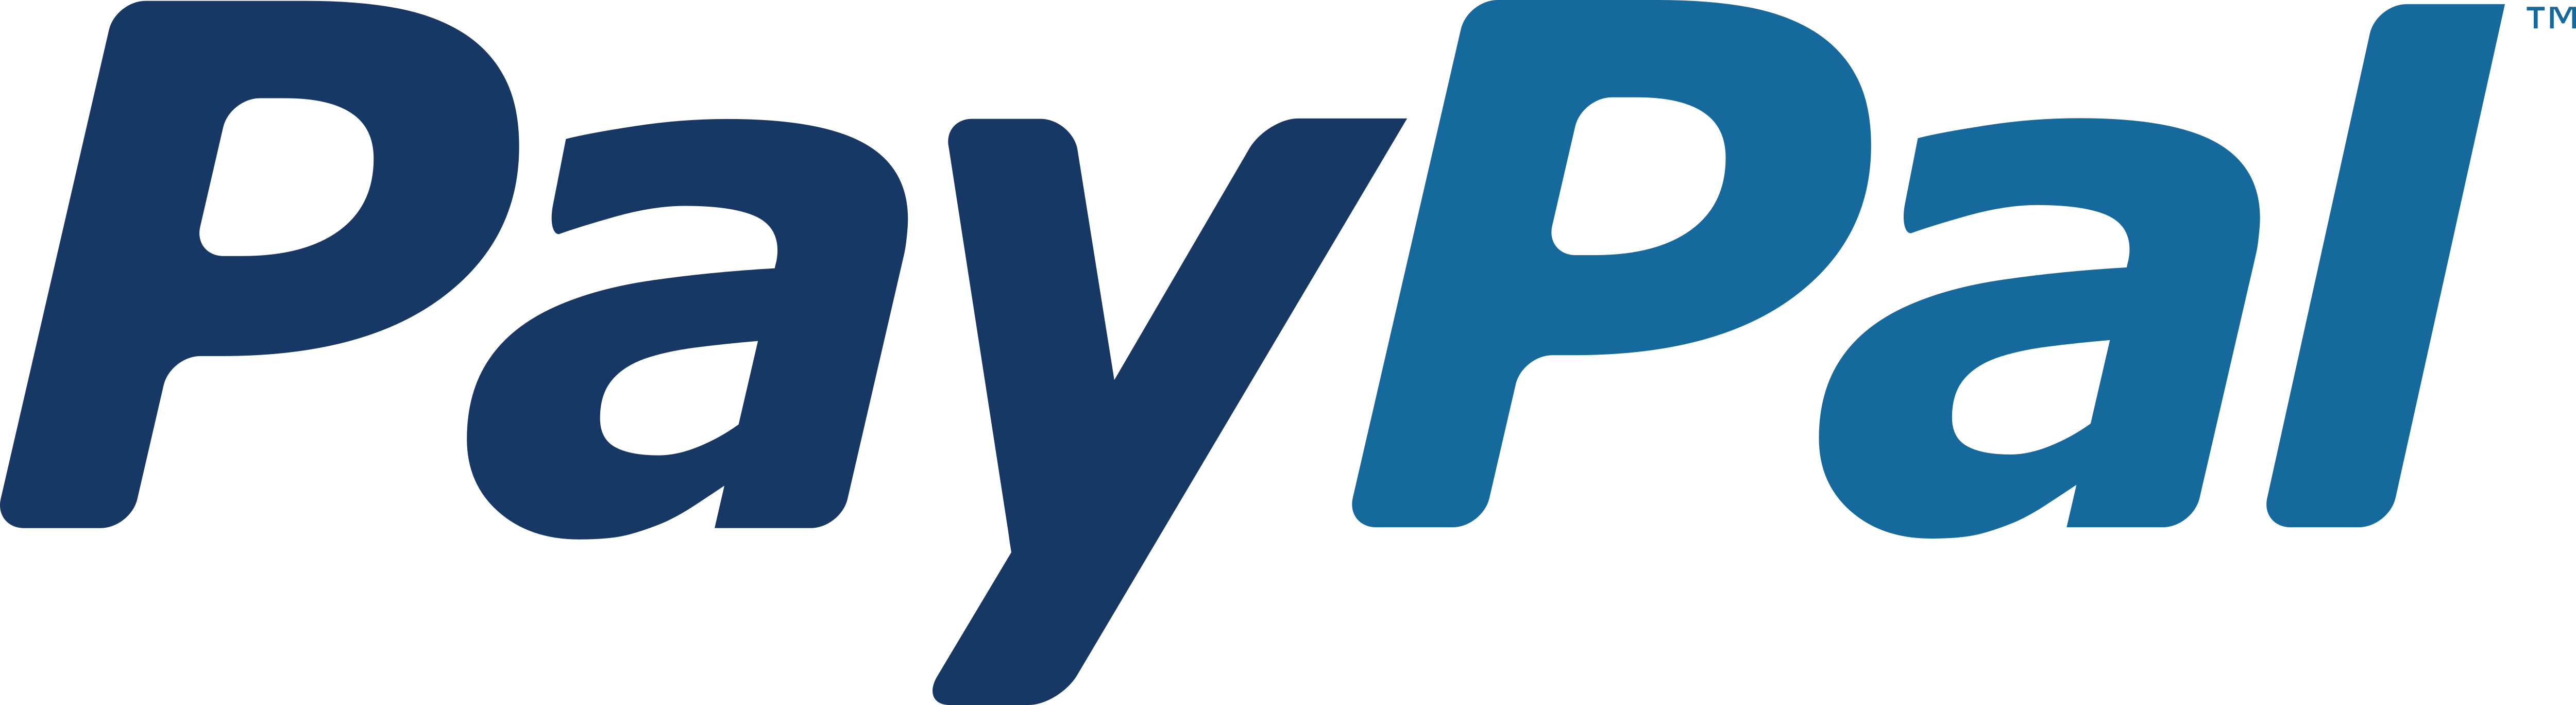 PayPal – Logos Download
